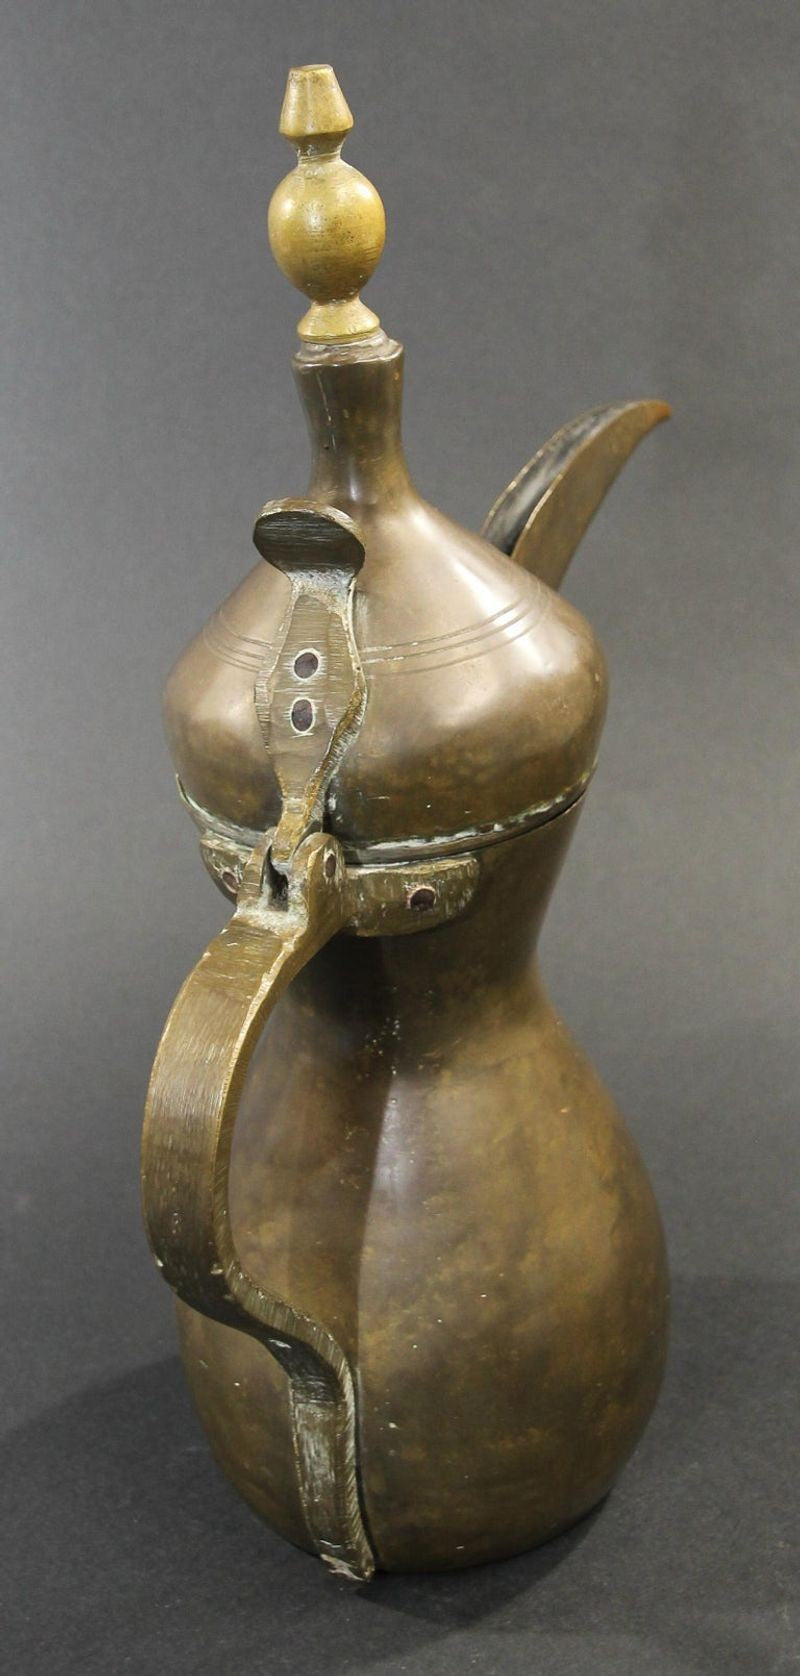 Antique Brass Middle Eastern Dallah Arabic Coffee Pot - E-mosaik